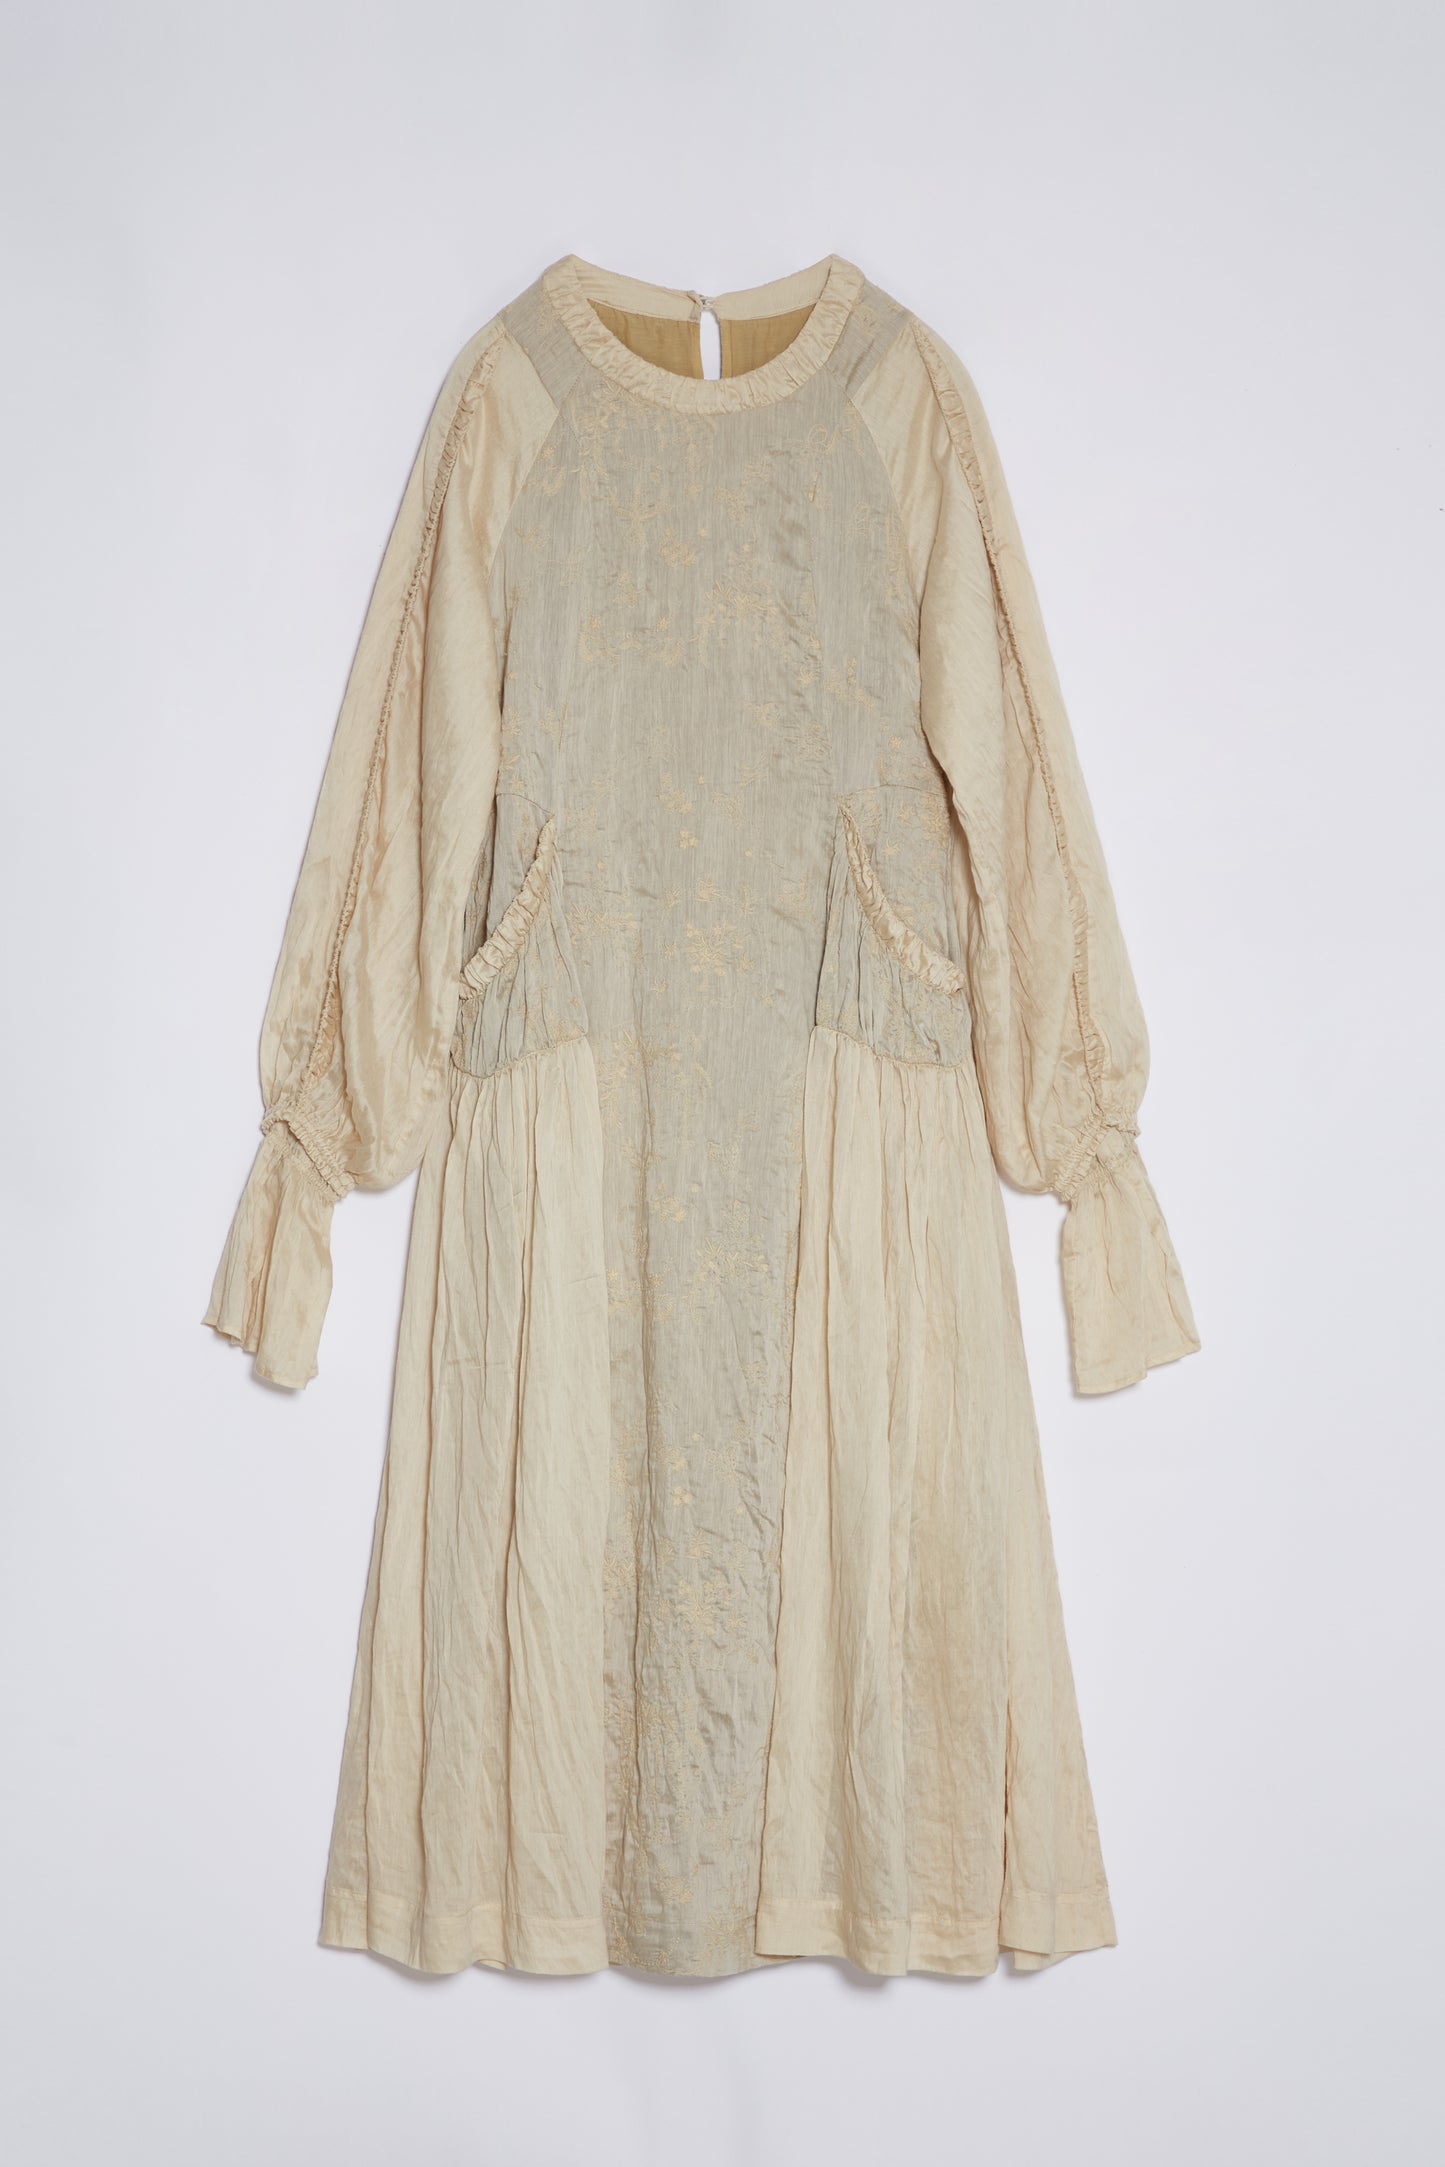 Haline herbal dye dress in beige